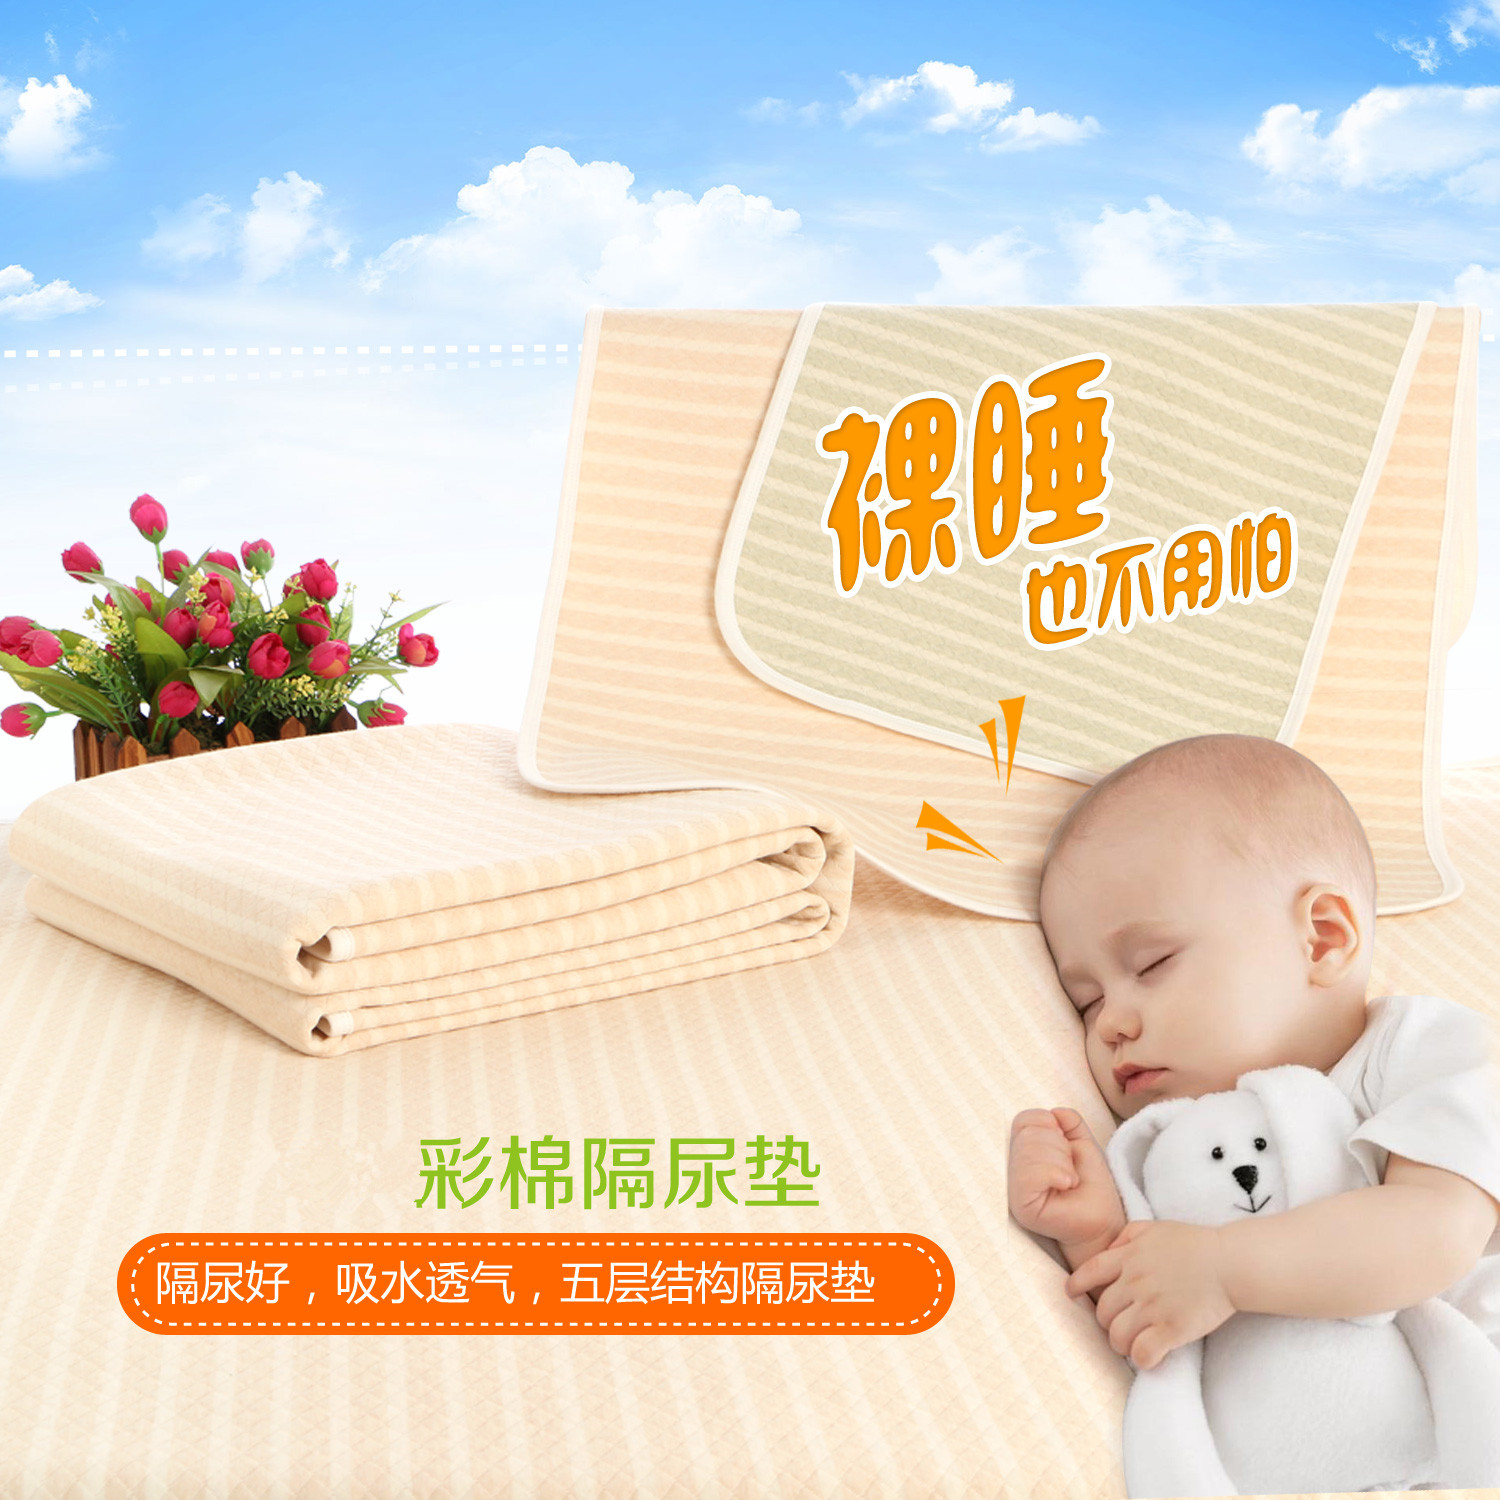 婴儿加大双面隔尿垫彩棉环保透气防水宝宝纯棉可洗床垫用品四季款